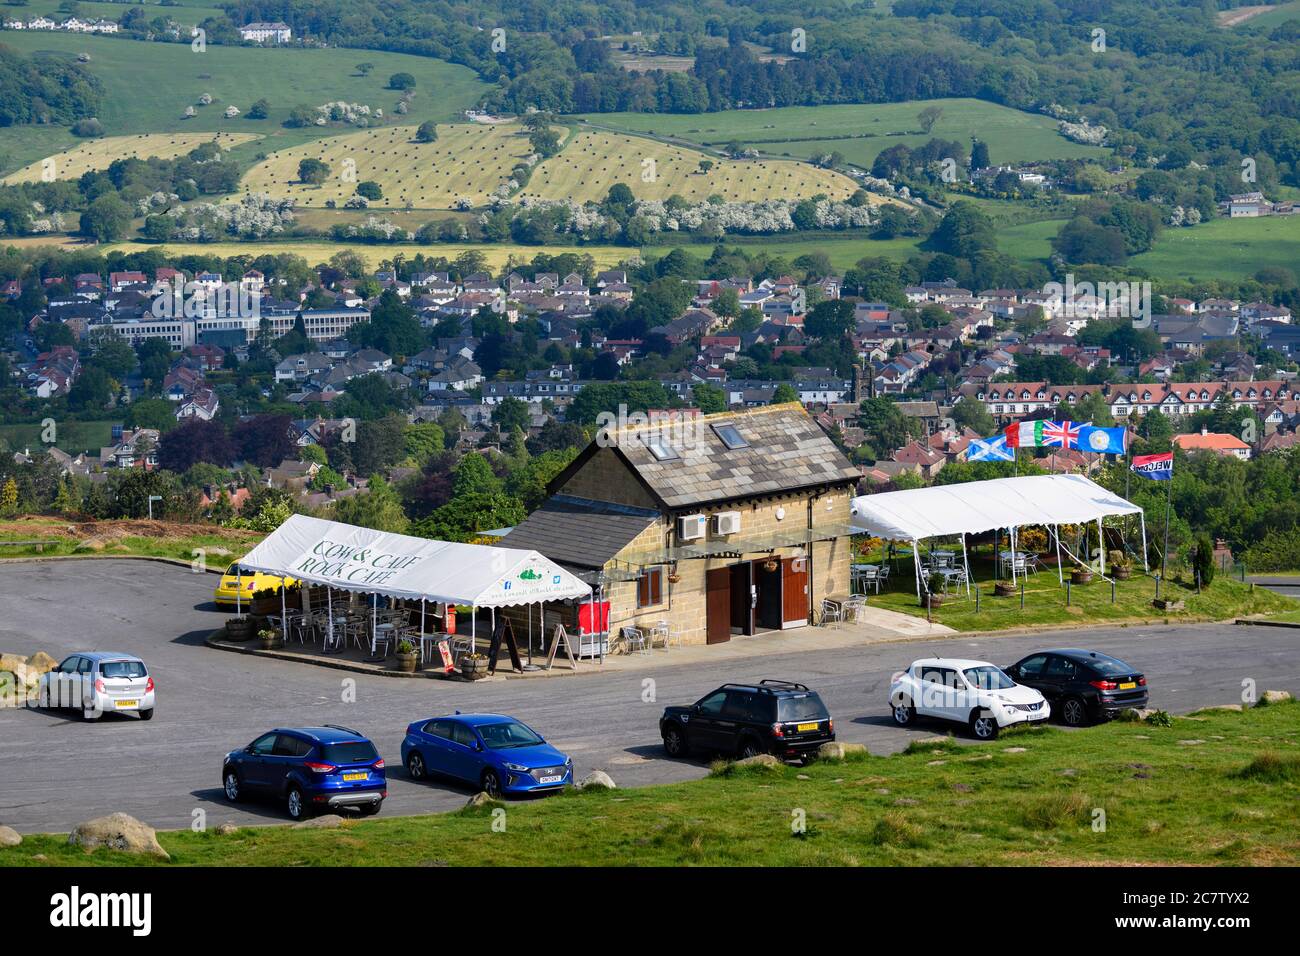 Café de la vache et du Calf Rock (extérieur) et parking sur une grande lande pittoresque surplombant les terres agricoles et les maisons de la vallée - Ilkley Moor, West Yorkshire, Angleterre, Royaume-Uni. Banque D'Images